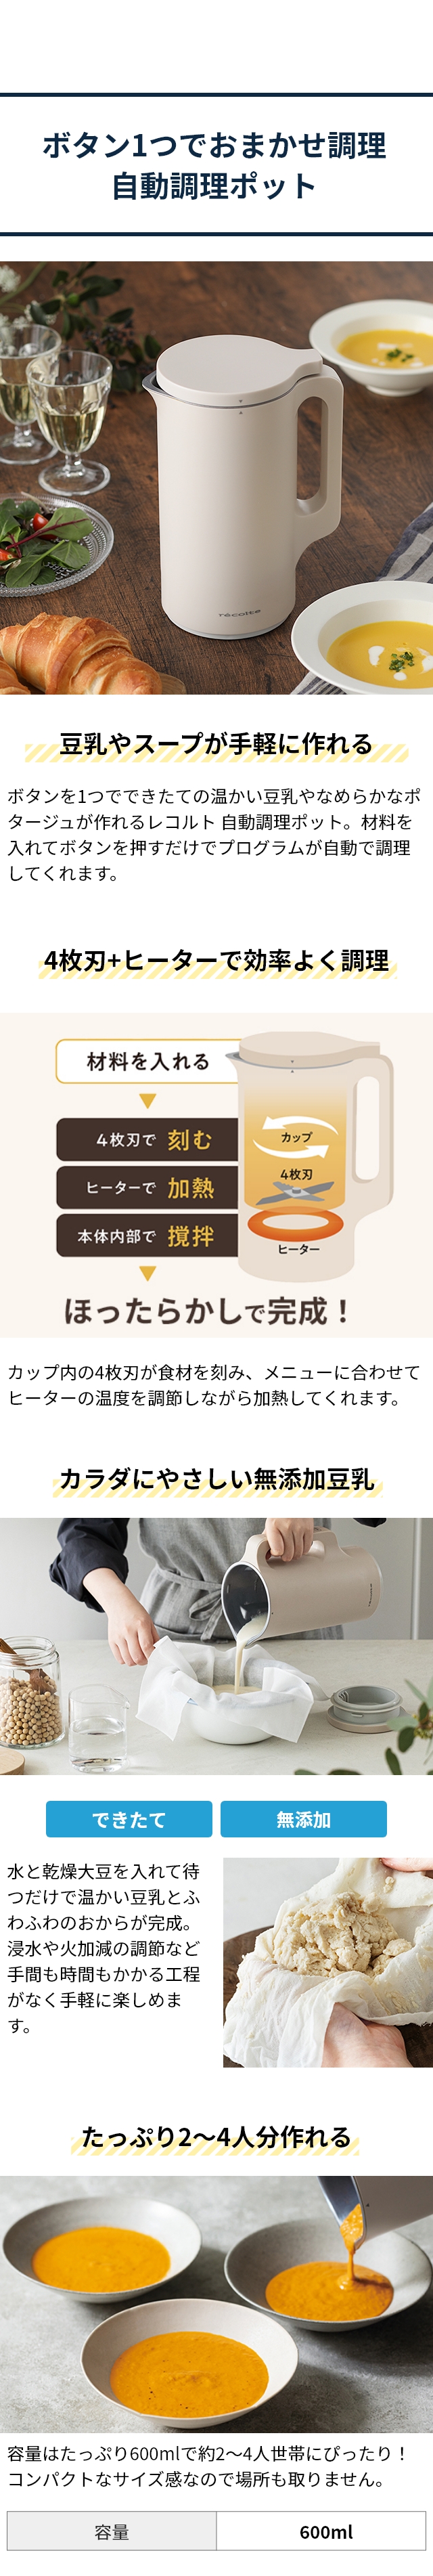 レコルト 【選べる2大特典】 豆乳メーカー 自動調理ポット RSY-2-W